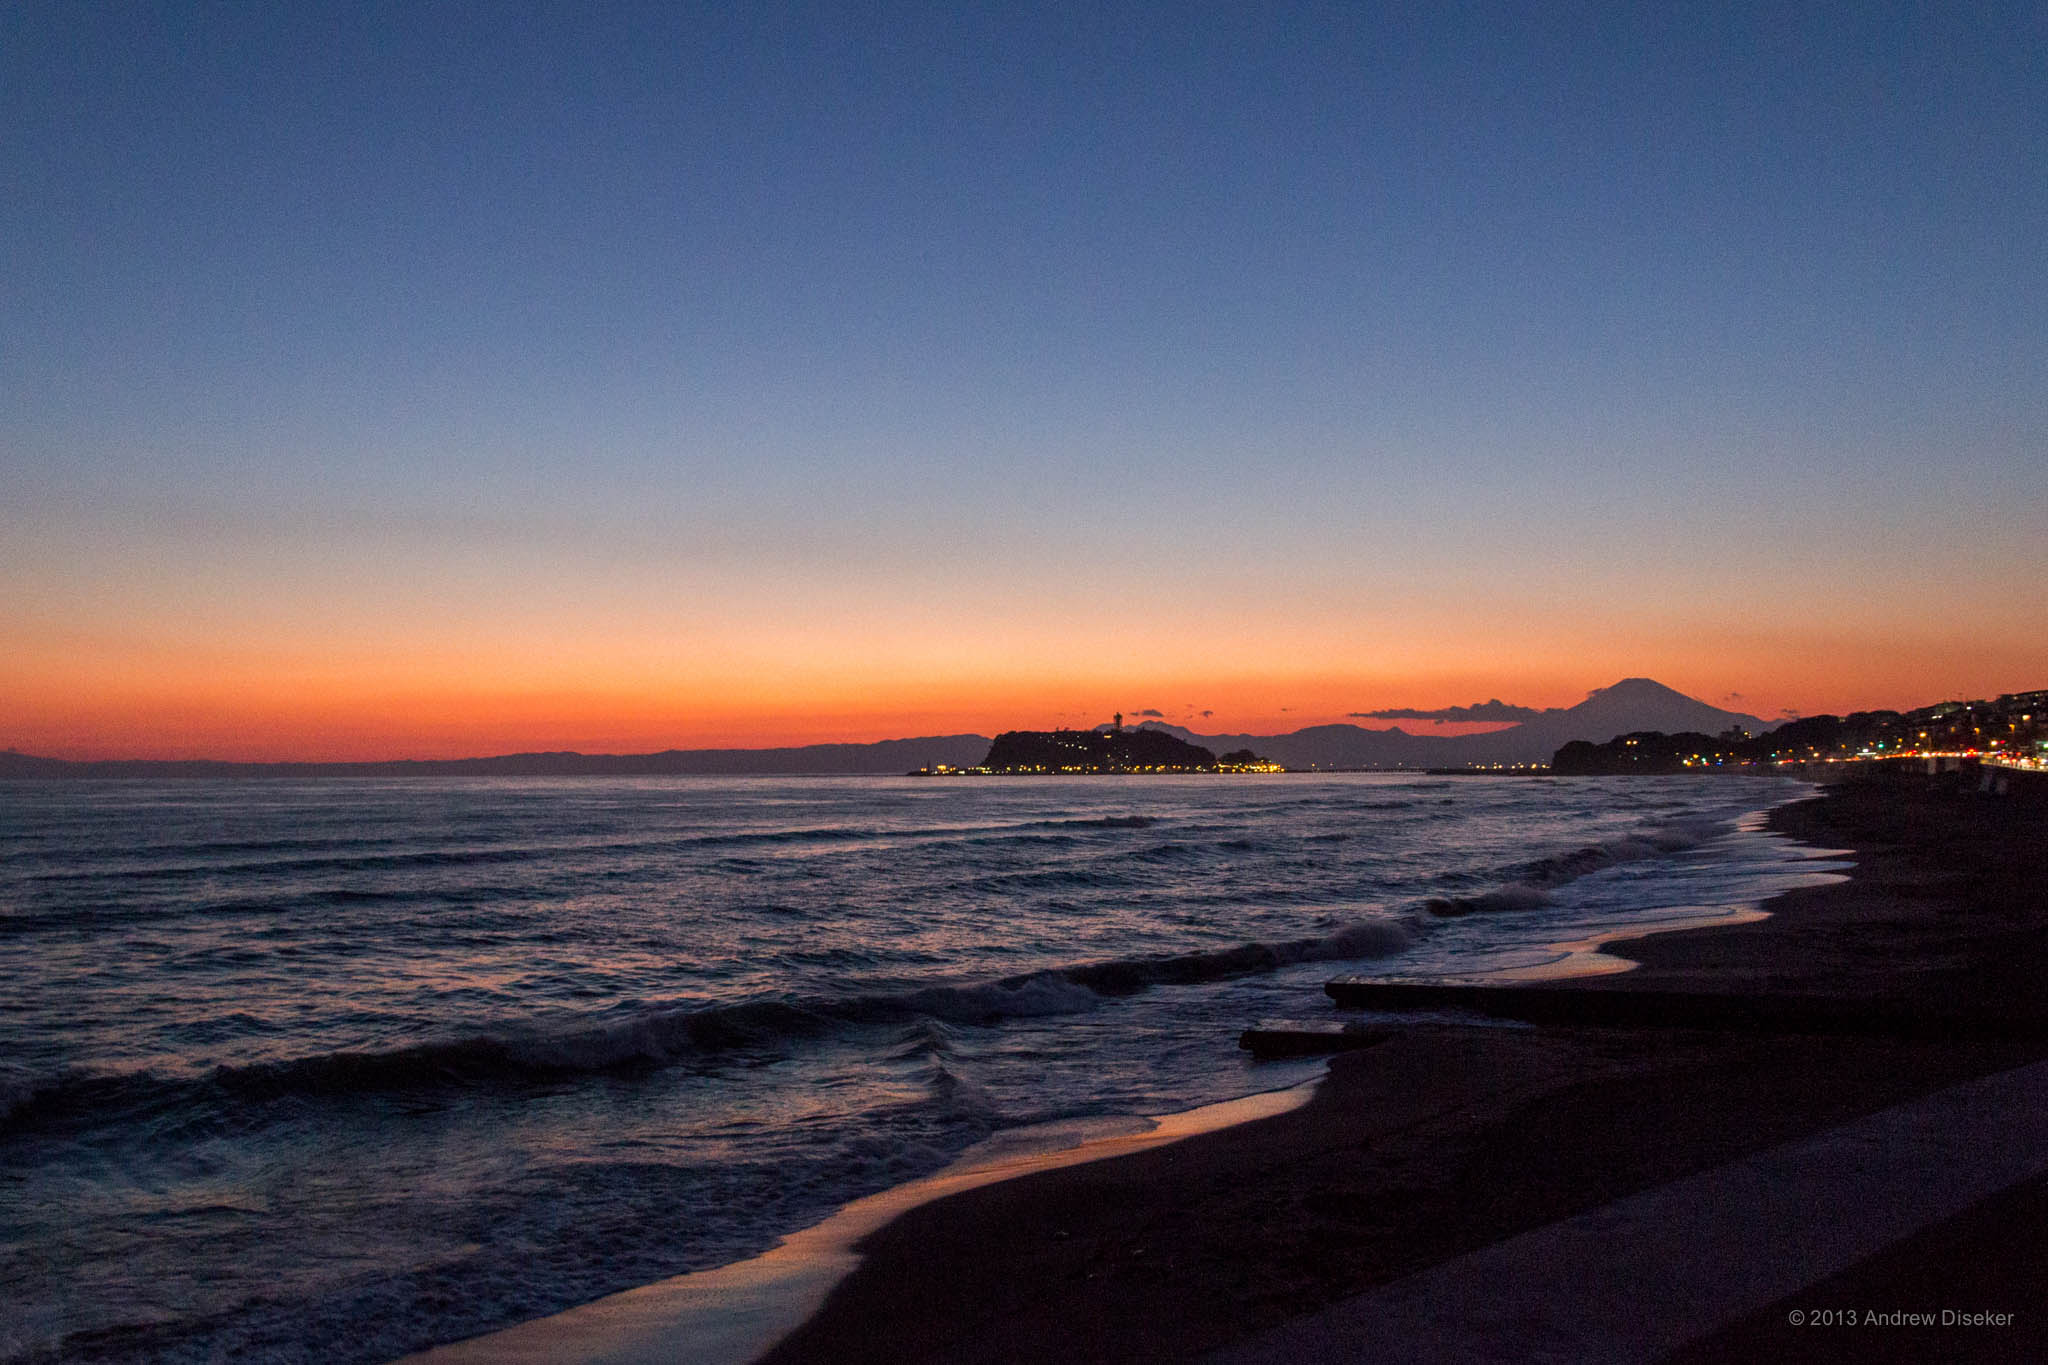 Shichirigahama Beach after sunset